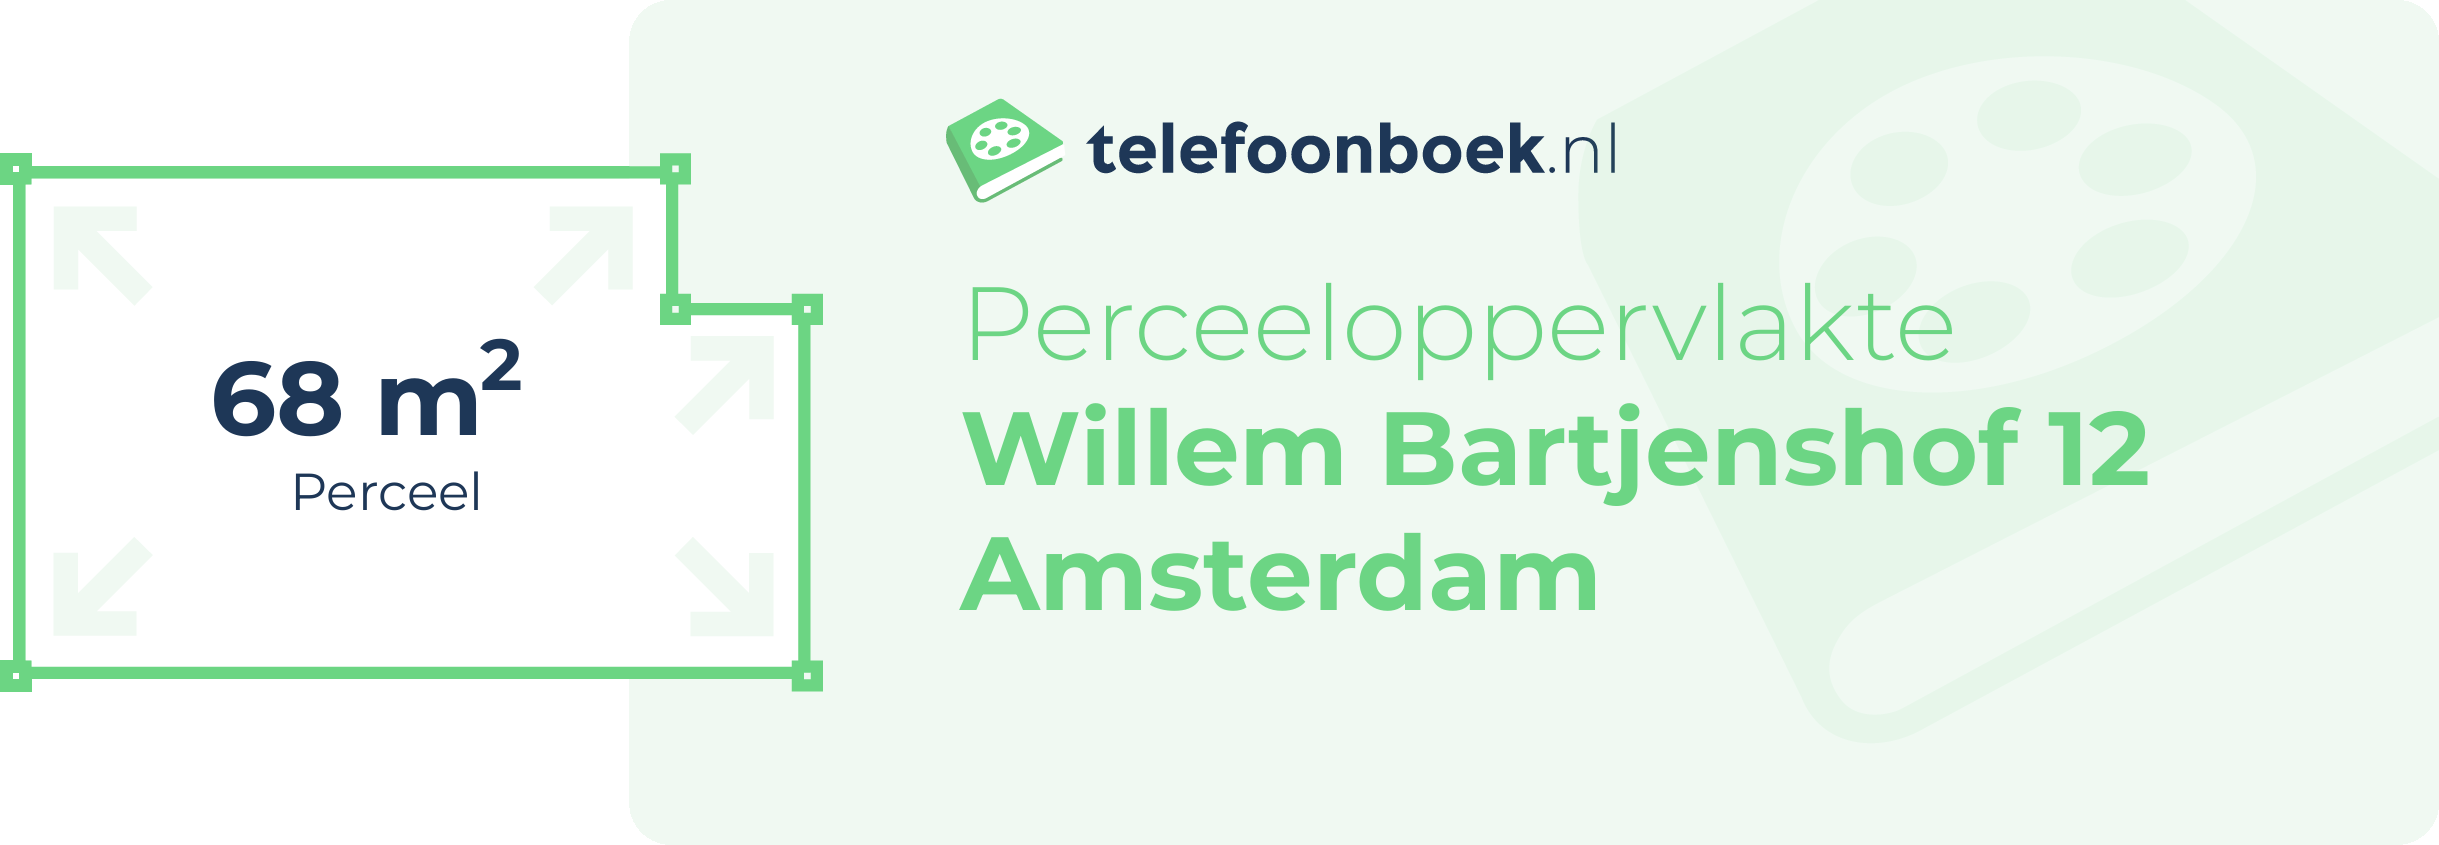 Perceeloppervlakte Willem Bartjenshof 12 Amsterdam